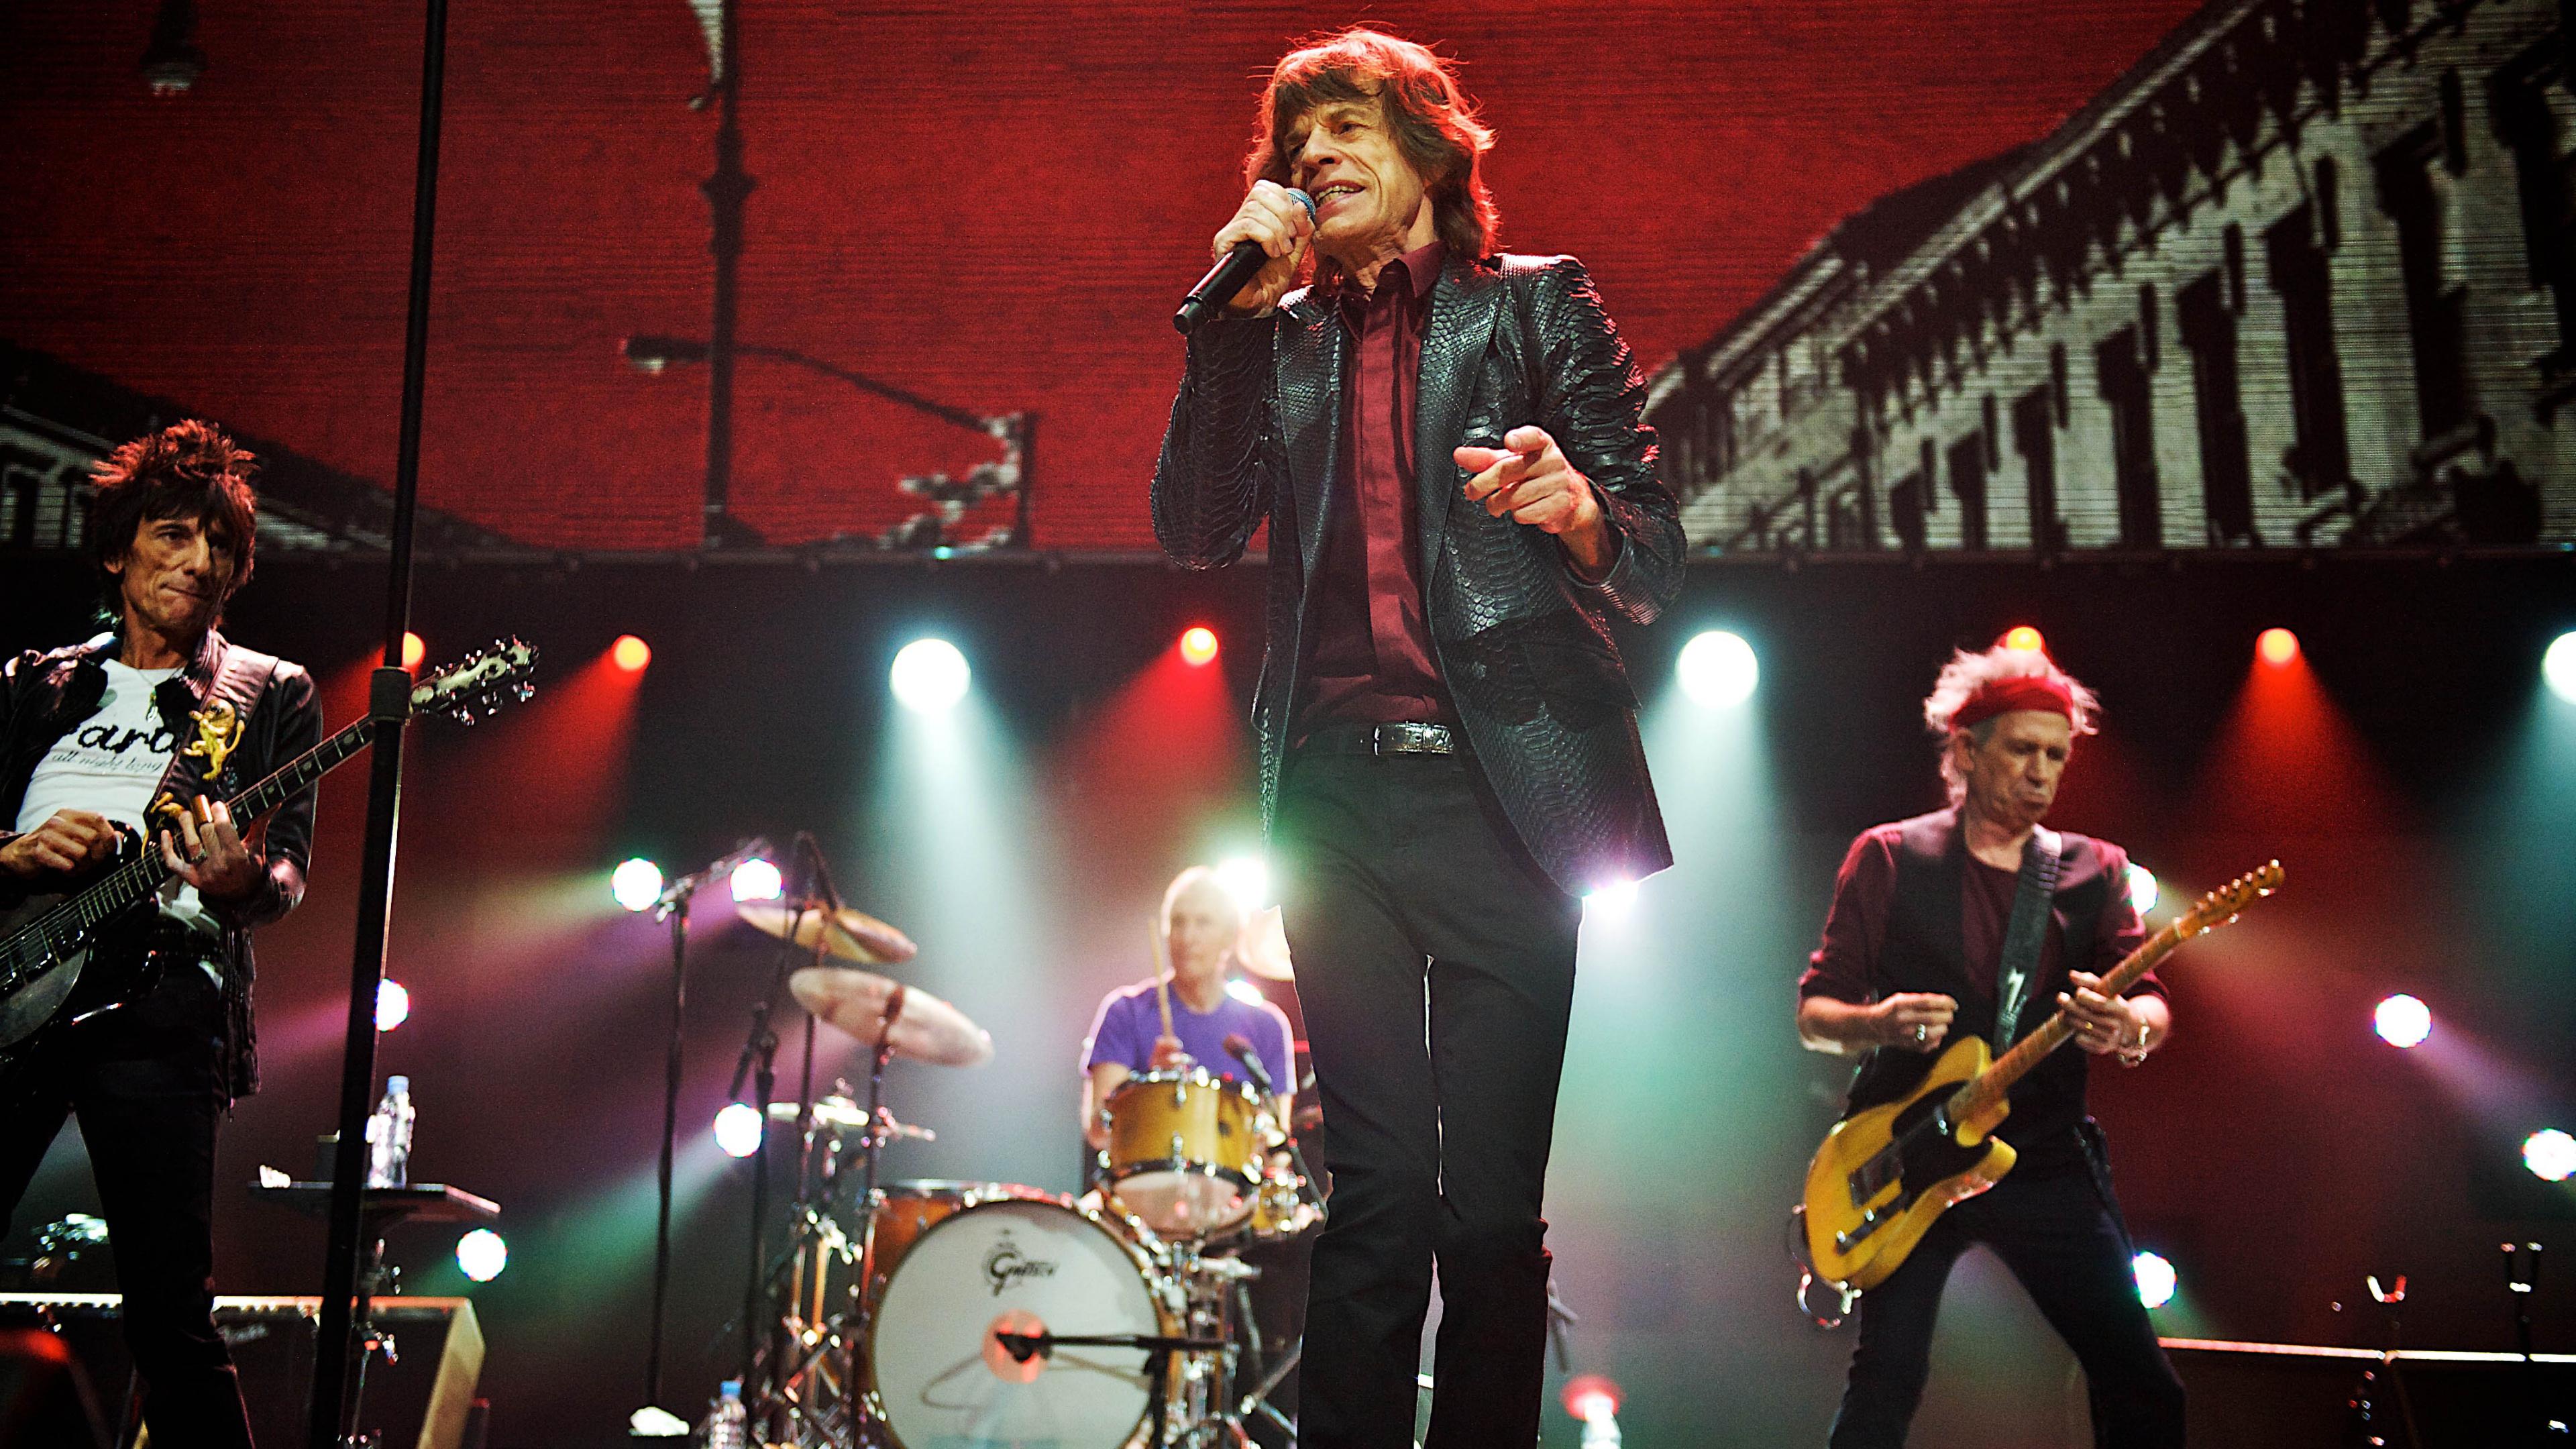 Mick Jagger, Rolling Stones concert, Live performance, Captivating atmosphere, 3840x2160 4K Desktop